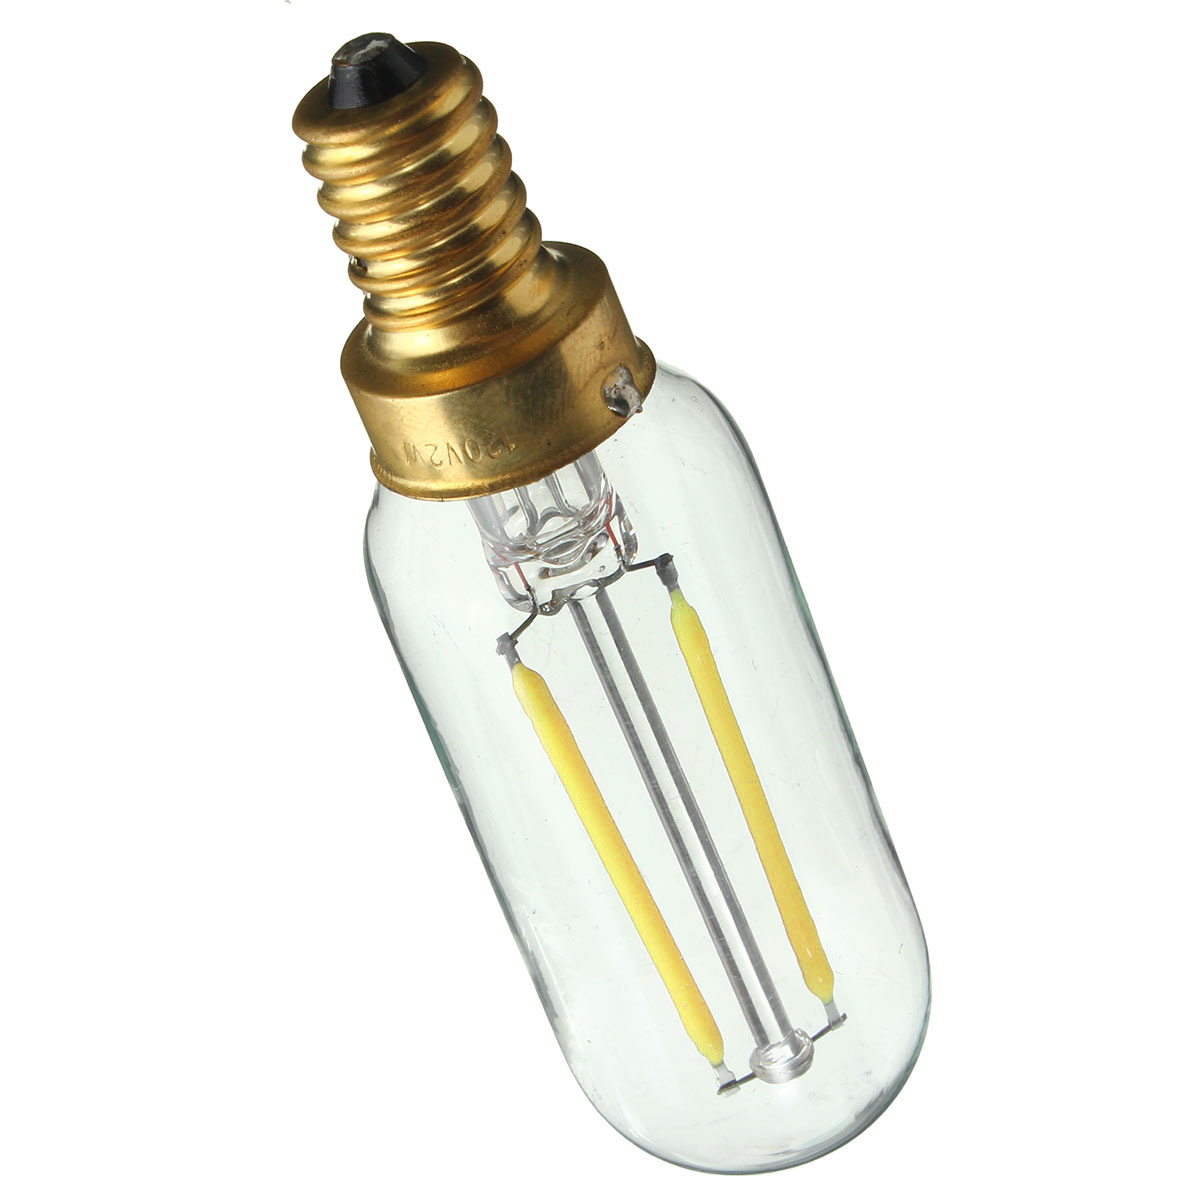 Dimmable-E12-T25-2W-LED-White-Warm-White-COB-Retro-Vintage-Edison-Filament-Light-Bulb-AC110V-1063499